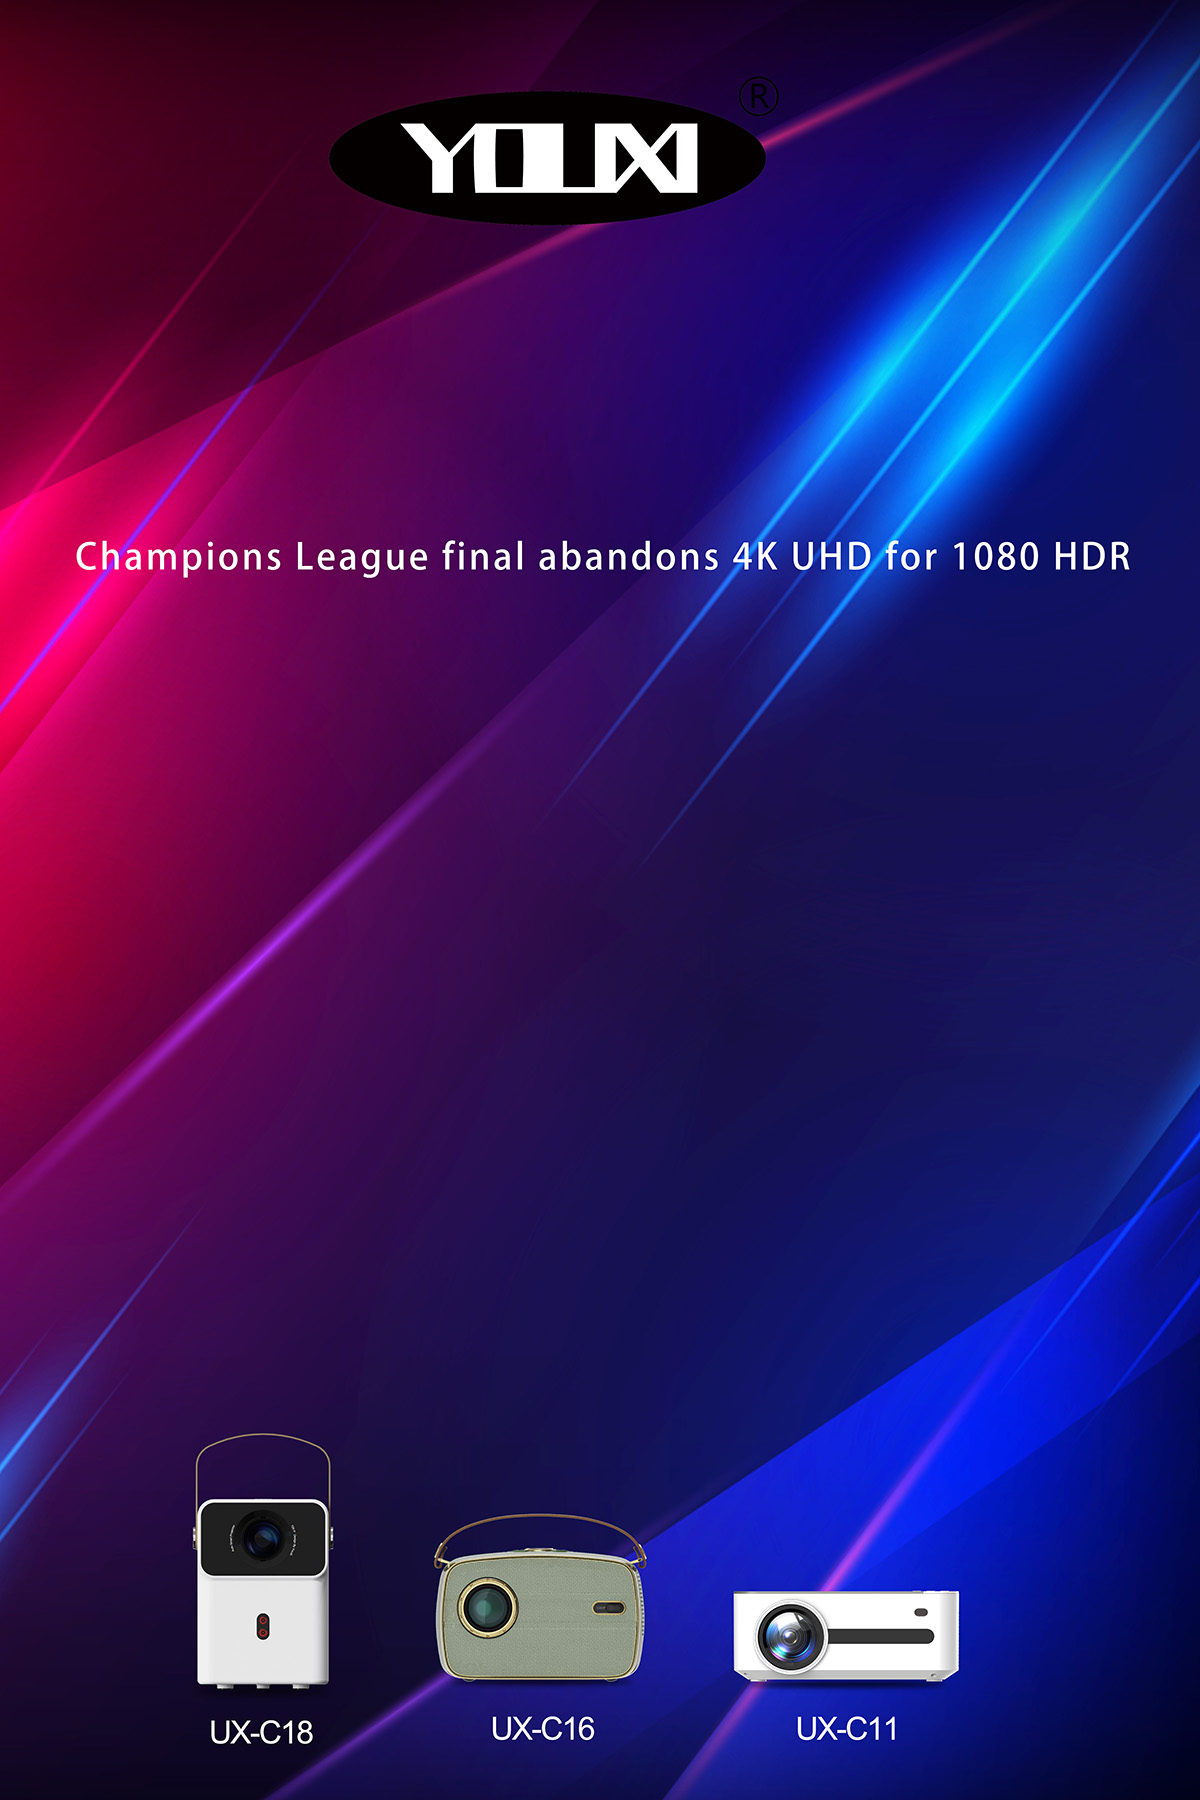 فینال لیگ قهرمانان اروپا 4K UHD را برای 1080 HDR کنار گذاشت